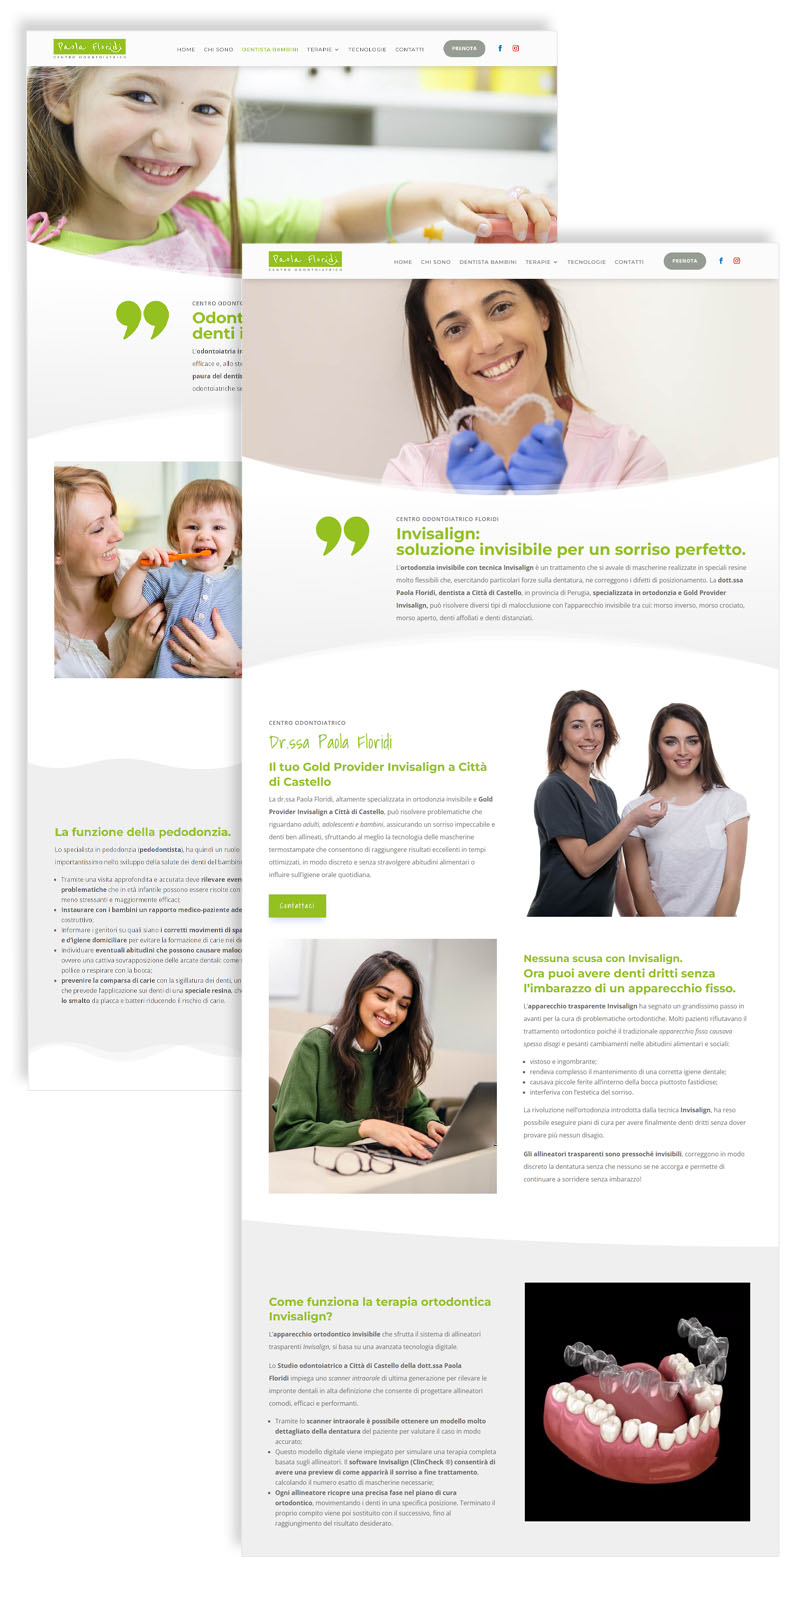 Le Campagne di marketing odontoiatrico - Centro Odontoiatrico Paola Floridi - Sito Web - centrodontoiatricofloridi.it -